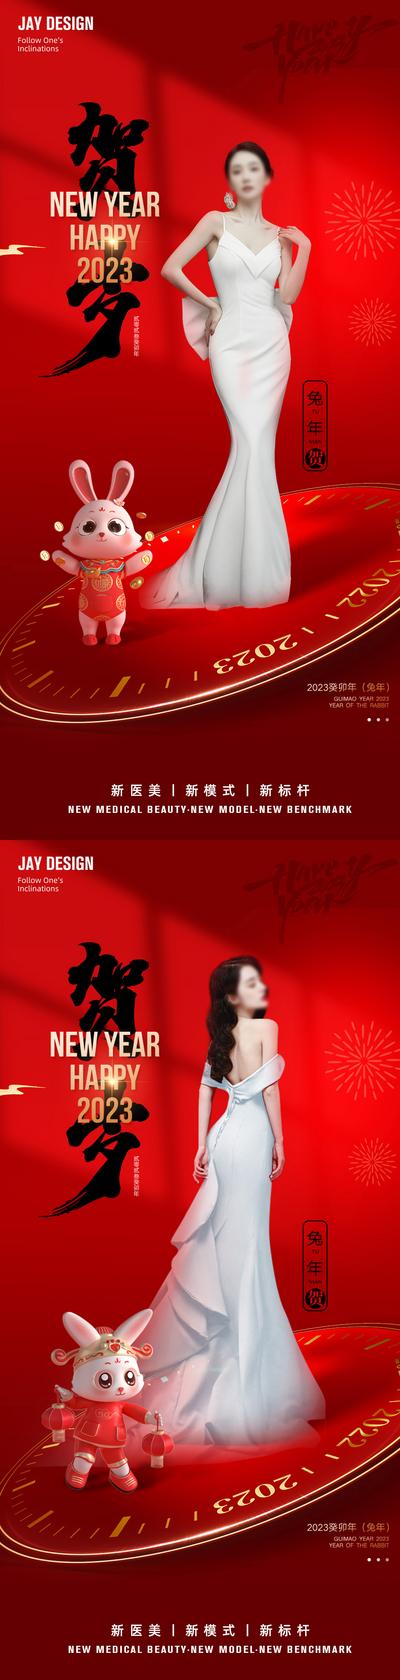 南门网 海报 医美 中式 人物 中国风 质感 2023 元旦 兔年 红色 时尚 传统节日 新年